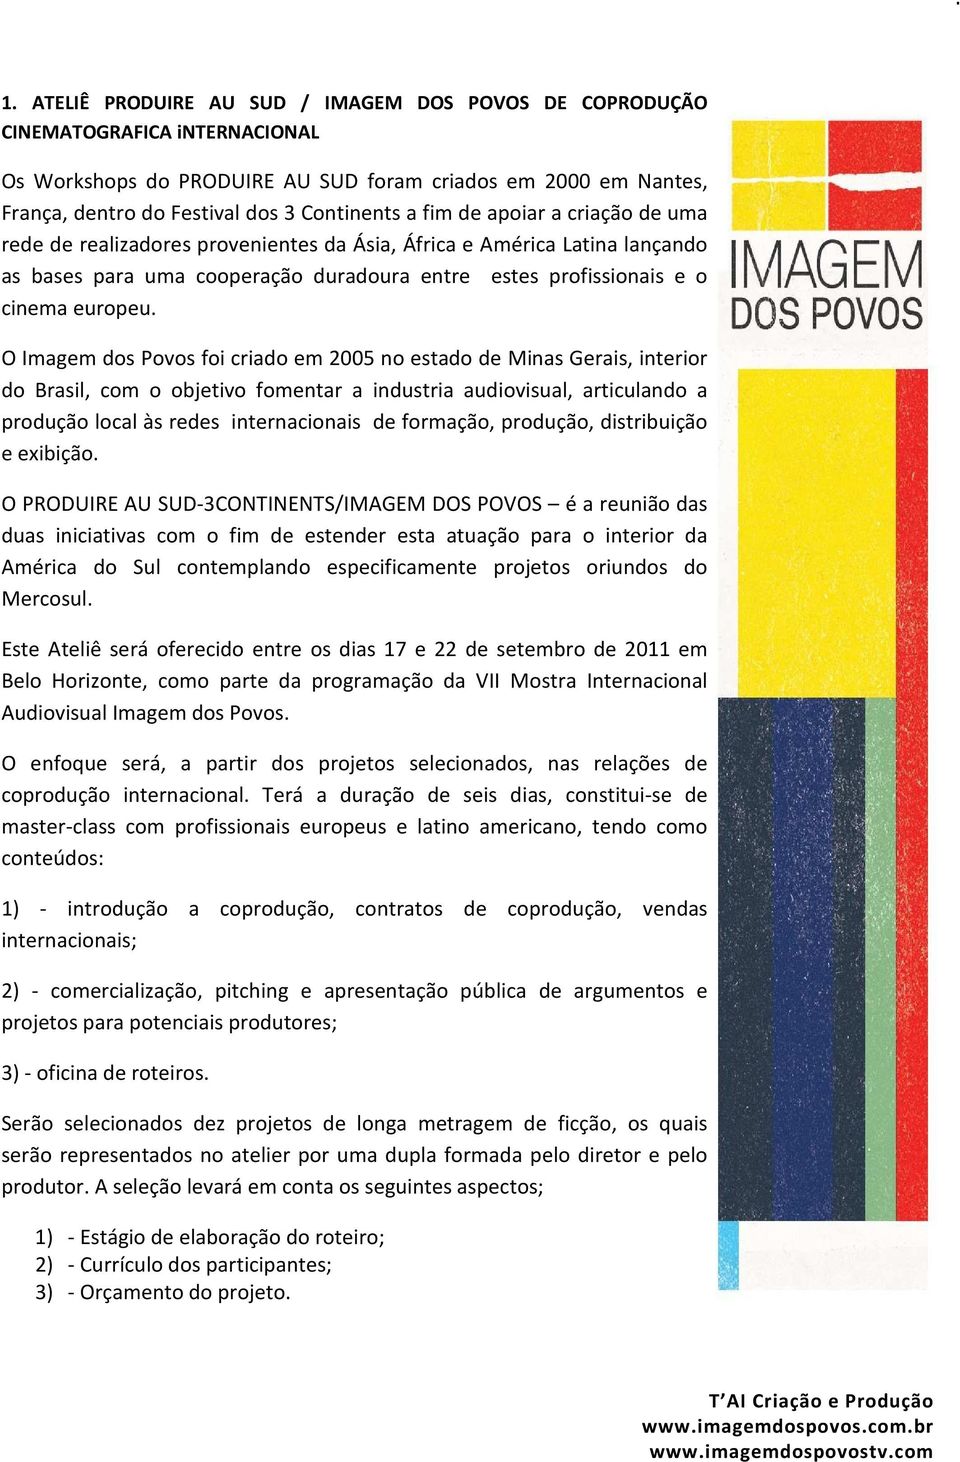 O Imagem dos Povos foi criado em 2005 no estado de Minas Gerais, interior do Brasil, com o objetivo fomentar a industria audiovisual, articulando a produção local às redes internacionais de formação,